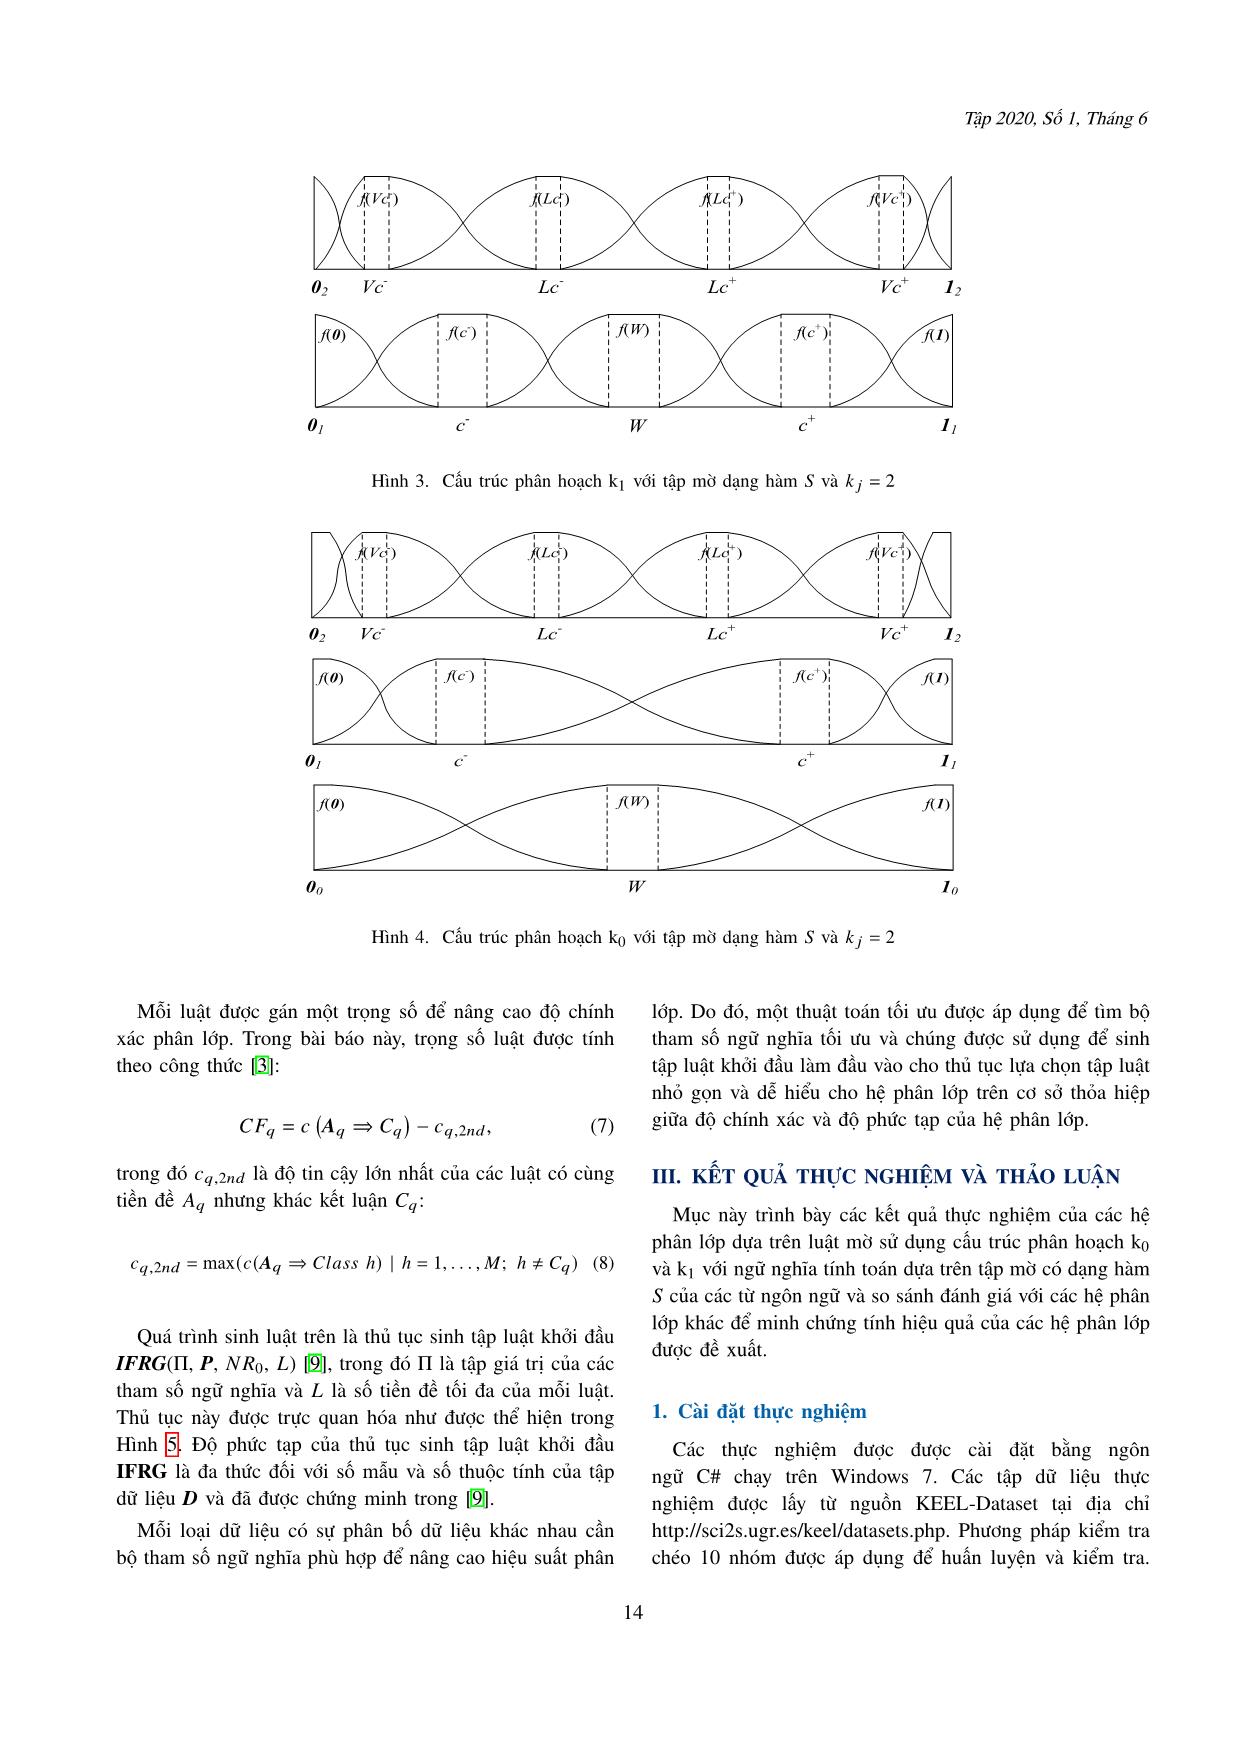 Một phương pháp thiết kế ngữ nghĩa tính toán của các từ ngôn ngữ giải bài toán phân lớp dựa trên luật mờ trang 5